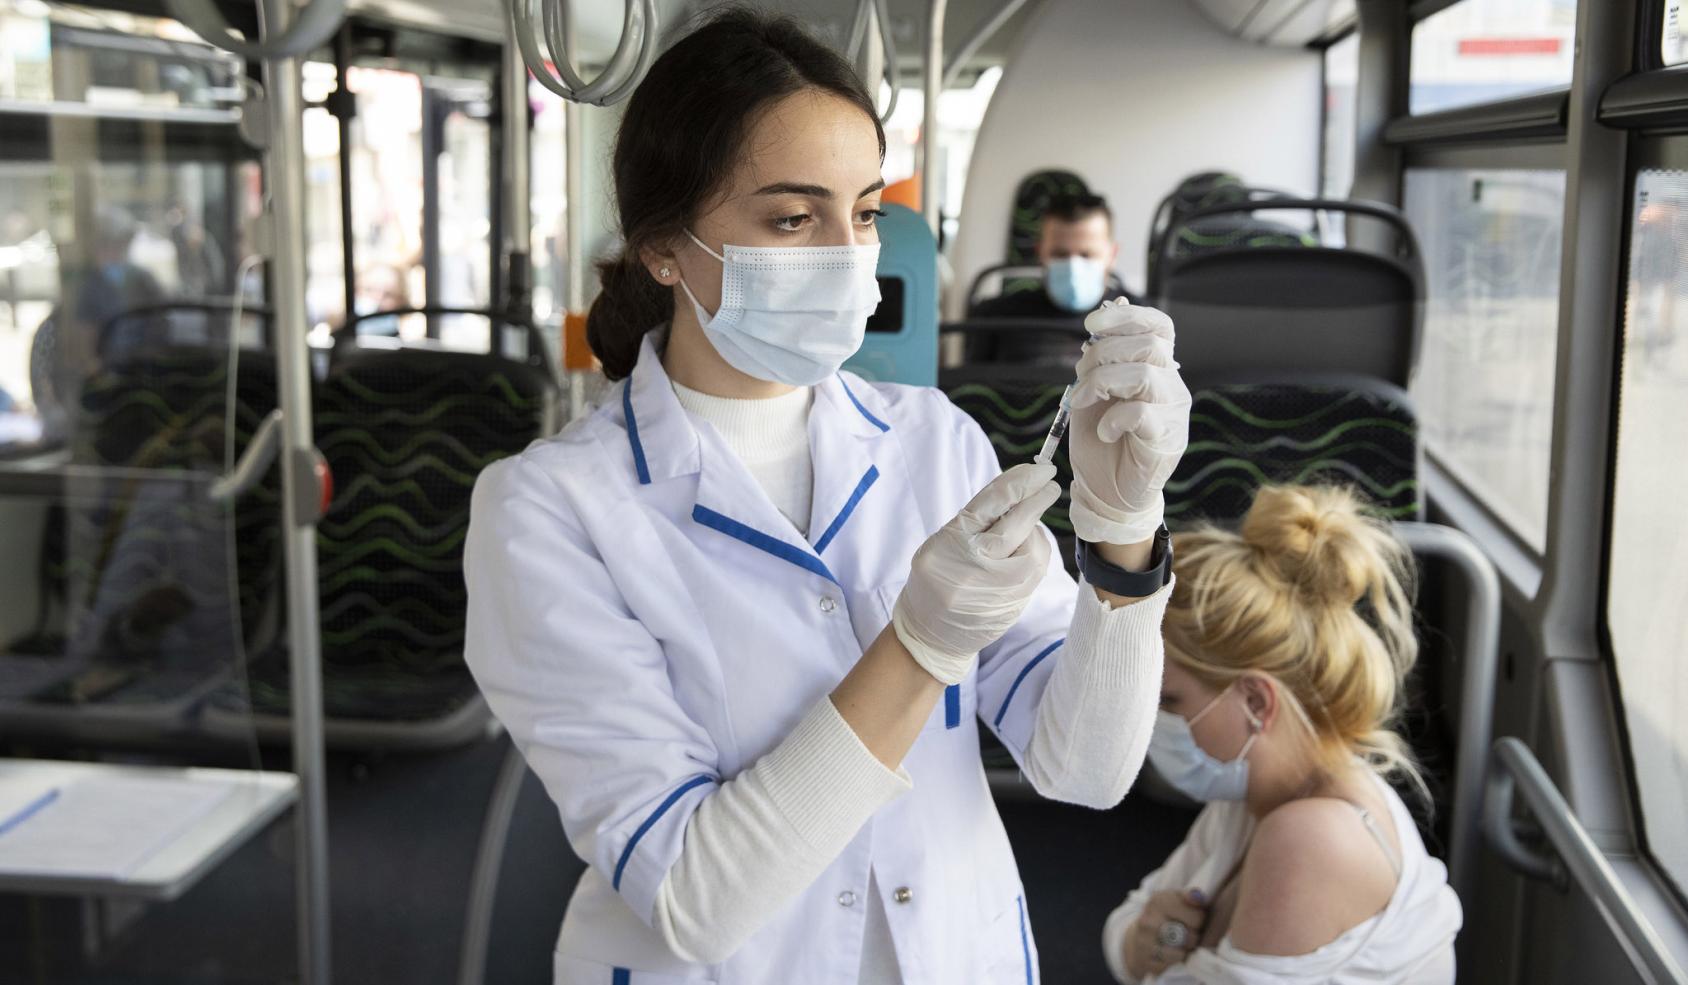 Un membre féminin du personnel de santé portant un masque de protection respiratoire prépare un vaccin anti-COVID-19 pour l'administrer à une femme dans un bus aménagé pour les opérations de vaccination.